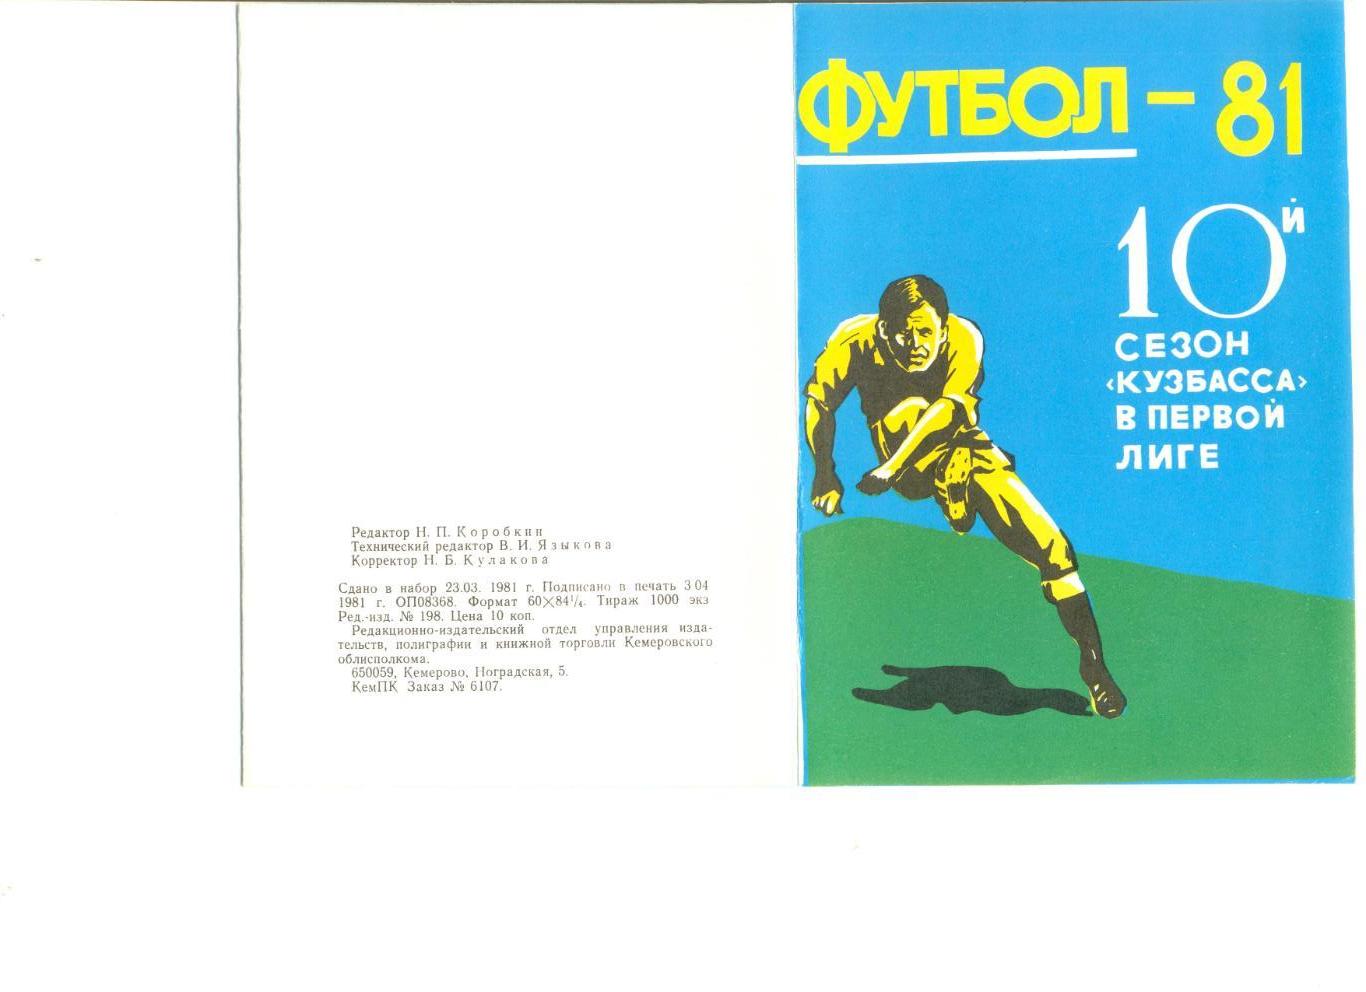 Кемерово - 1981 г. (Состав команды, фото игроков, календарь игр Кузбасса)